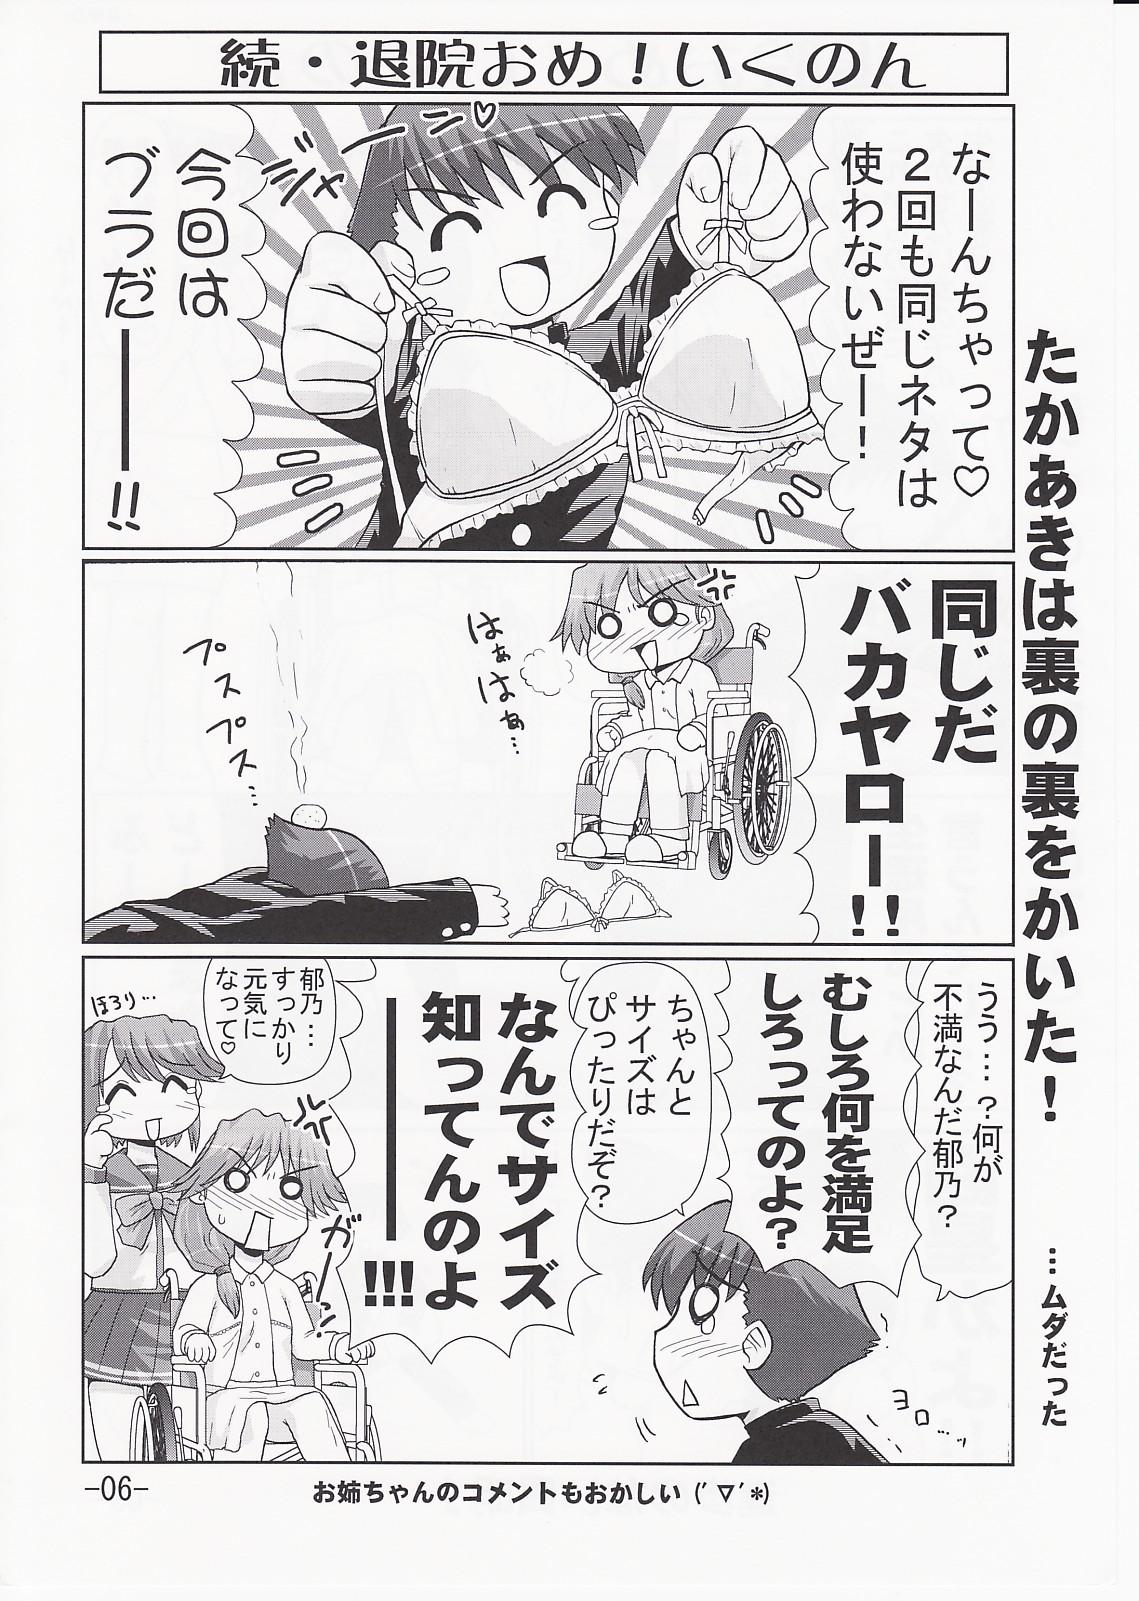 Ikunon Manga 3 4